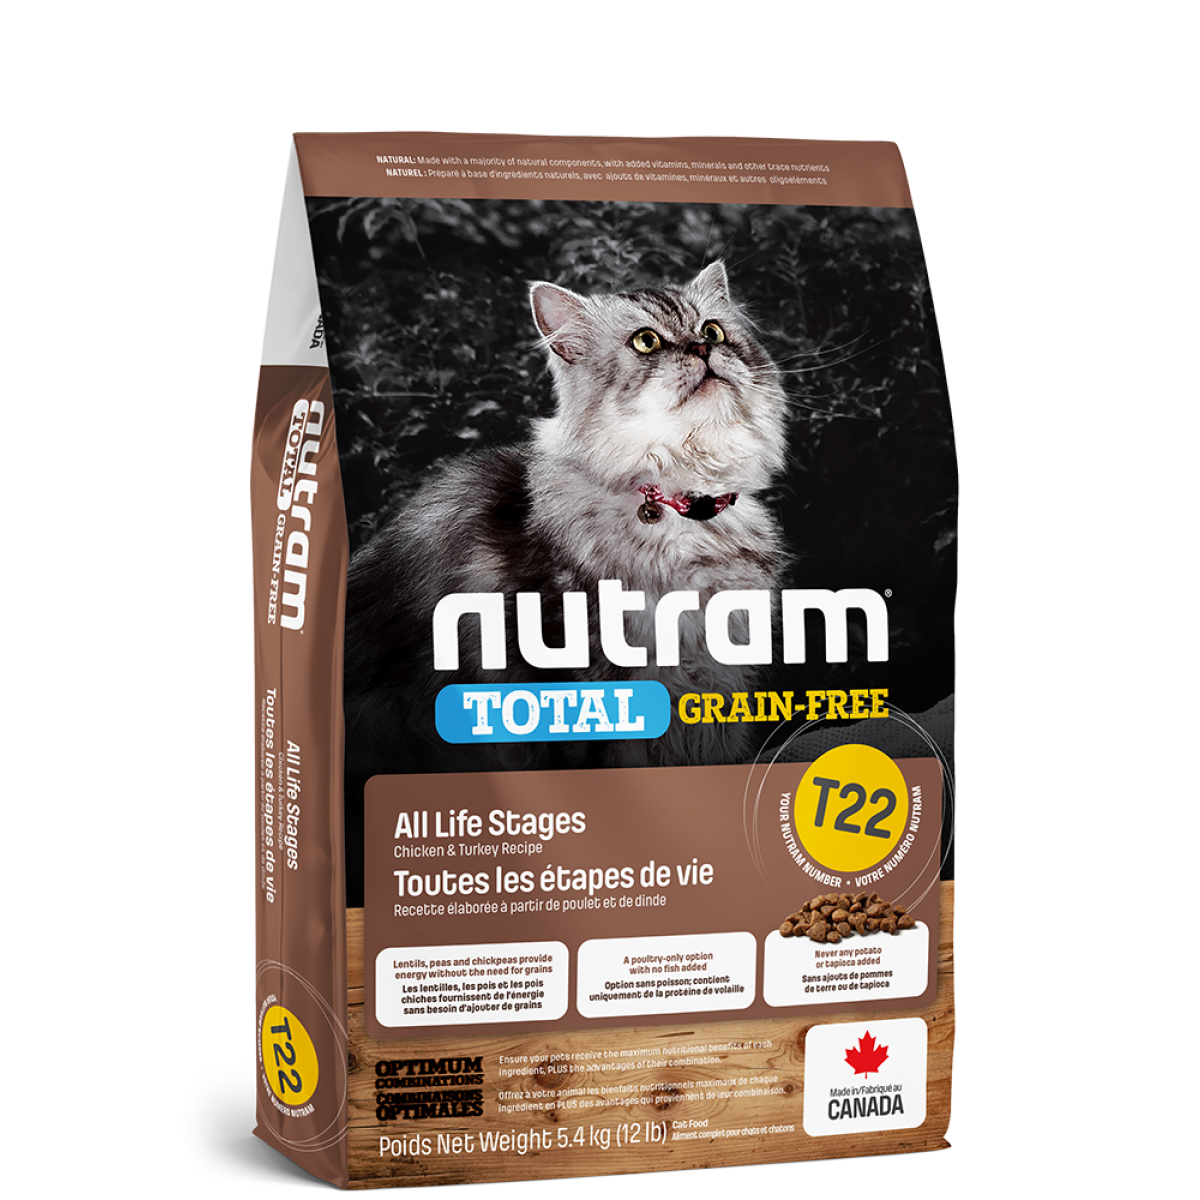 Nutram - Total Grain-Free - Turkey & Chicken Recipe (Cats) T22